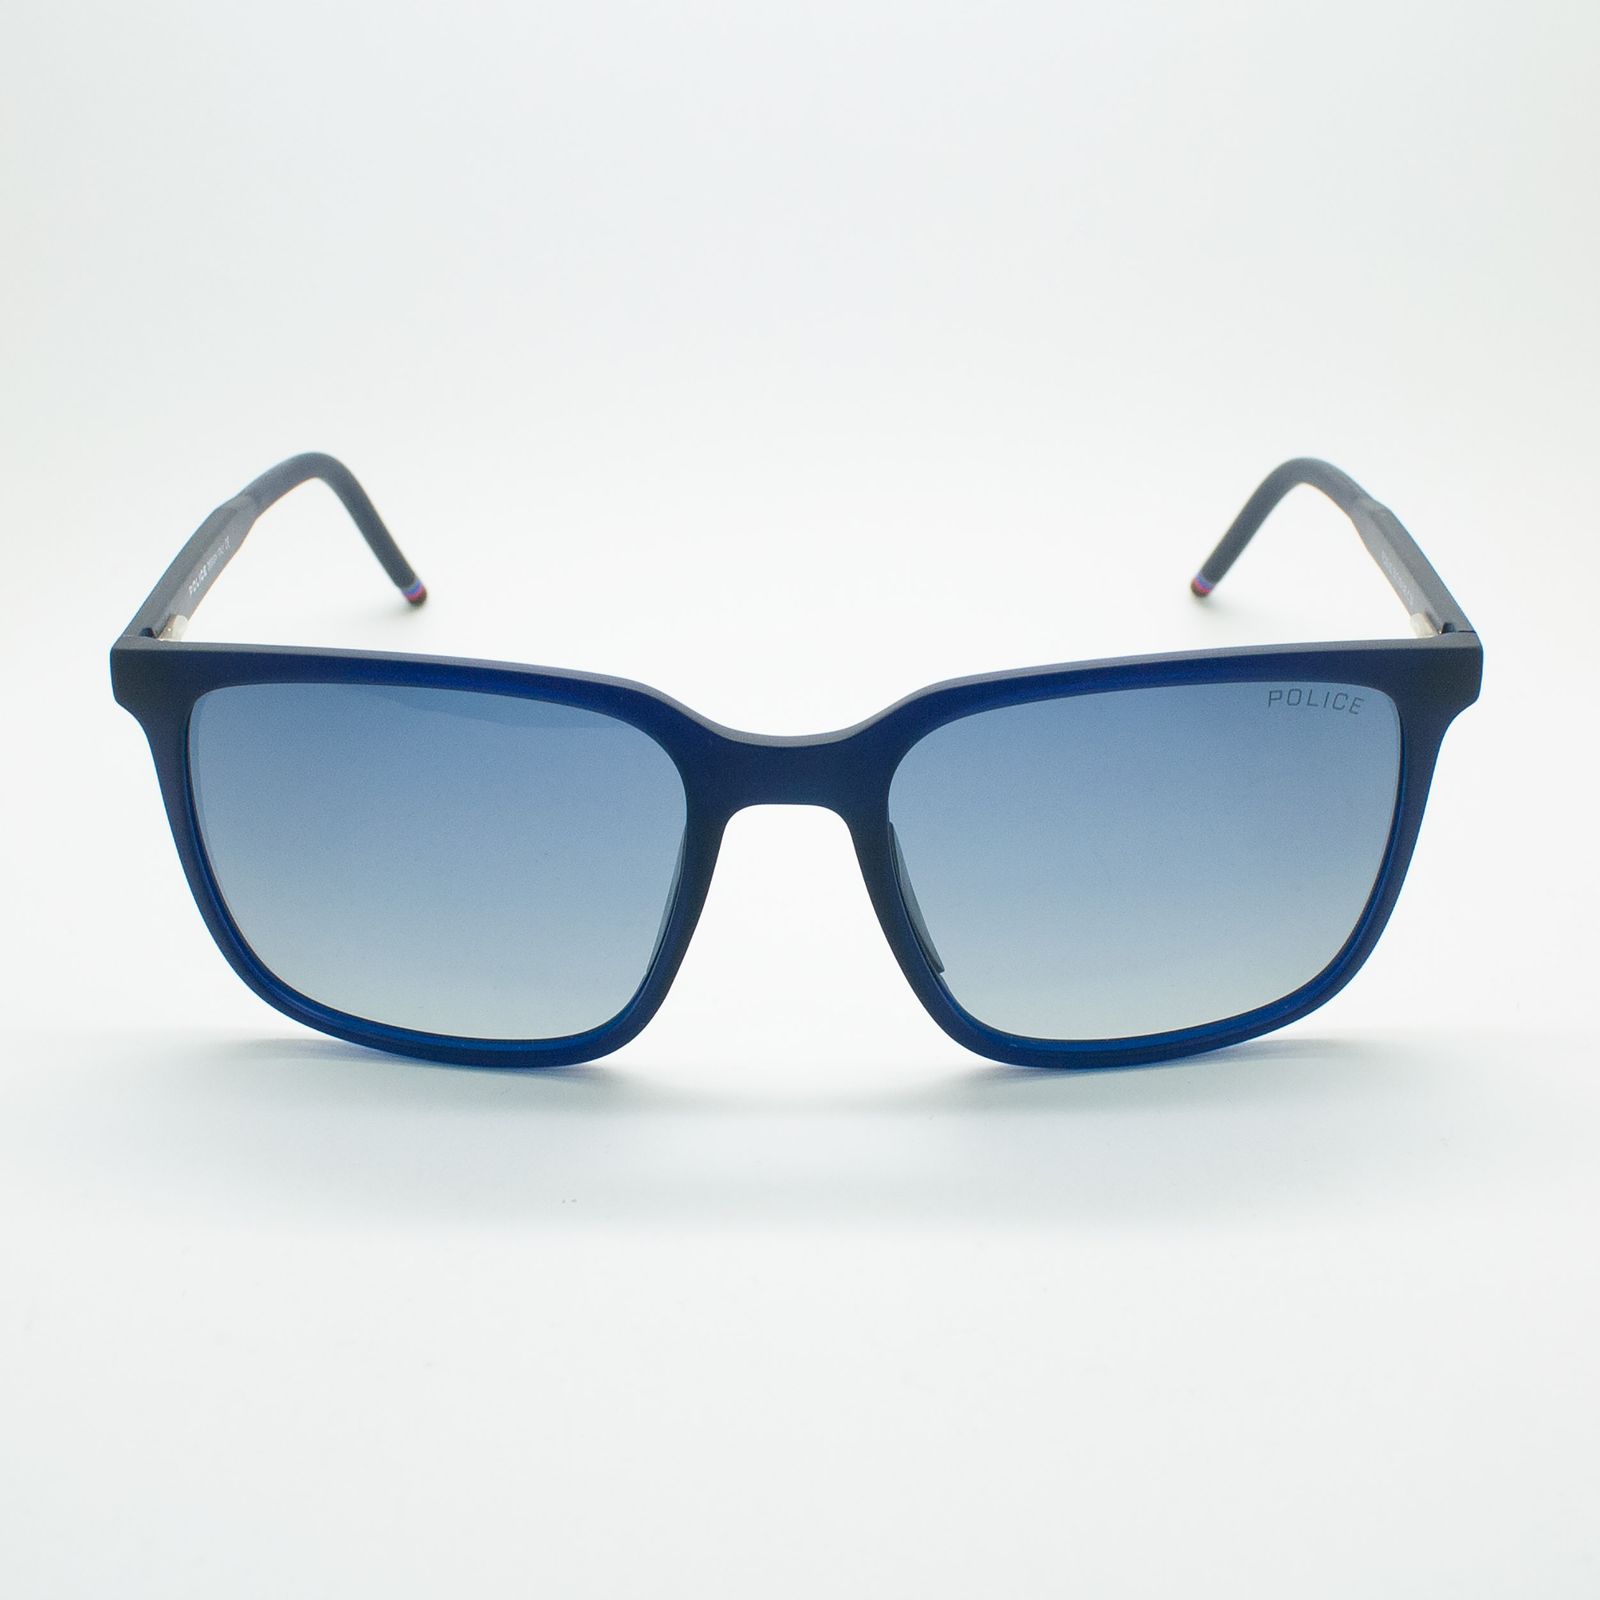 عینک آفتابی پلیس مدل FC05-03 C04 -  - 3